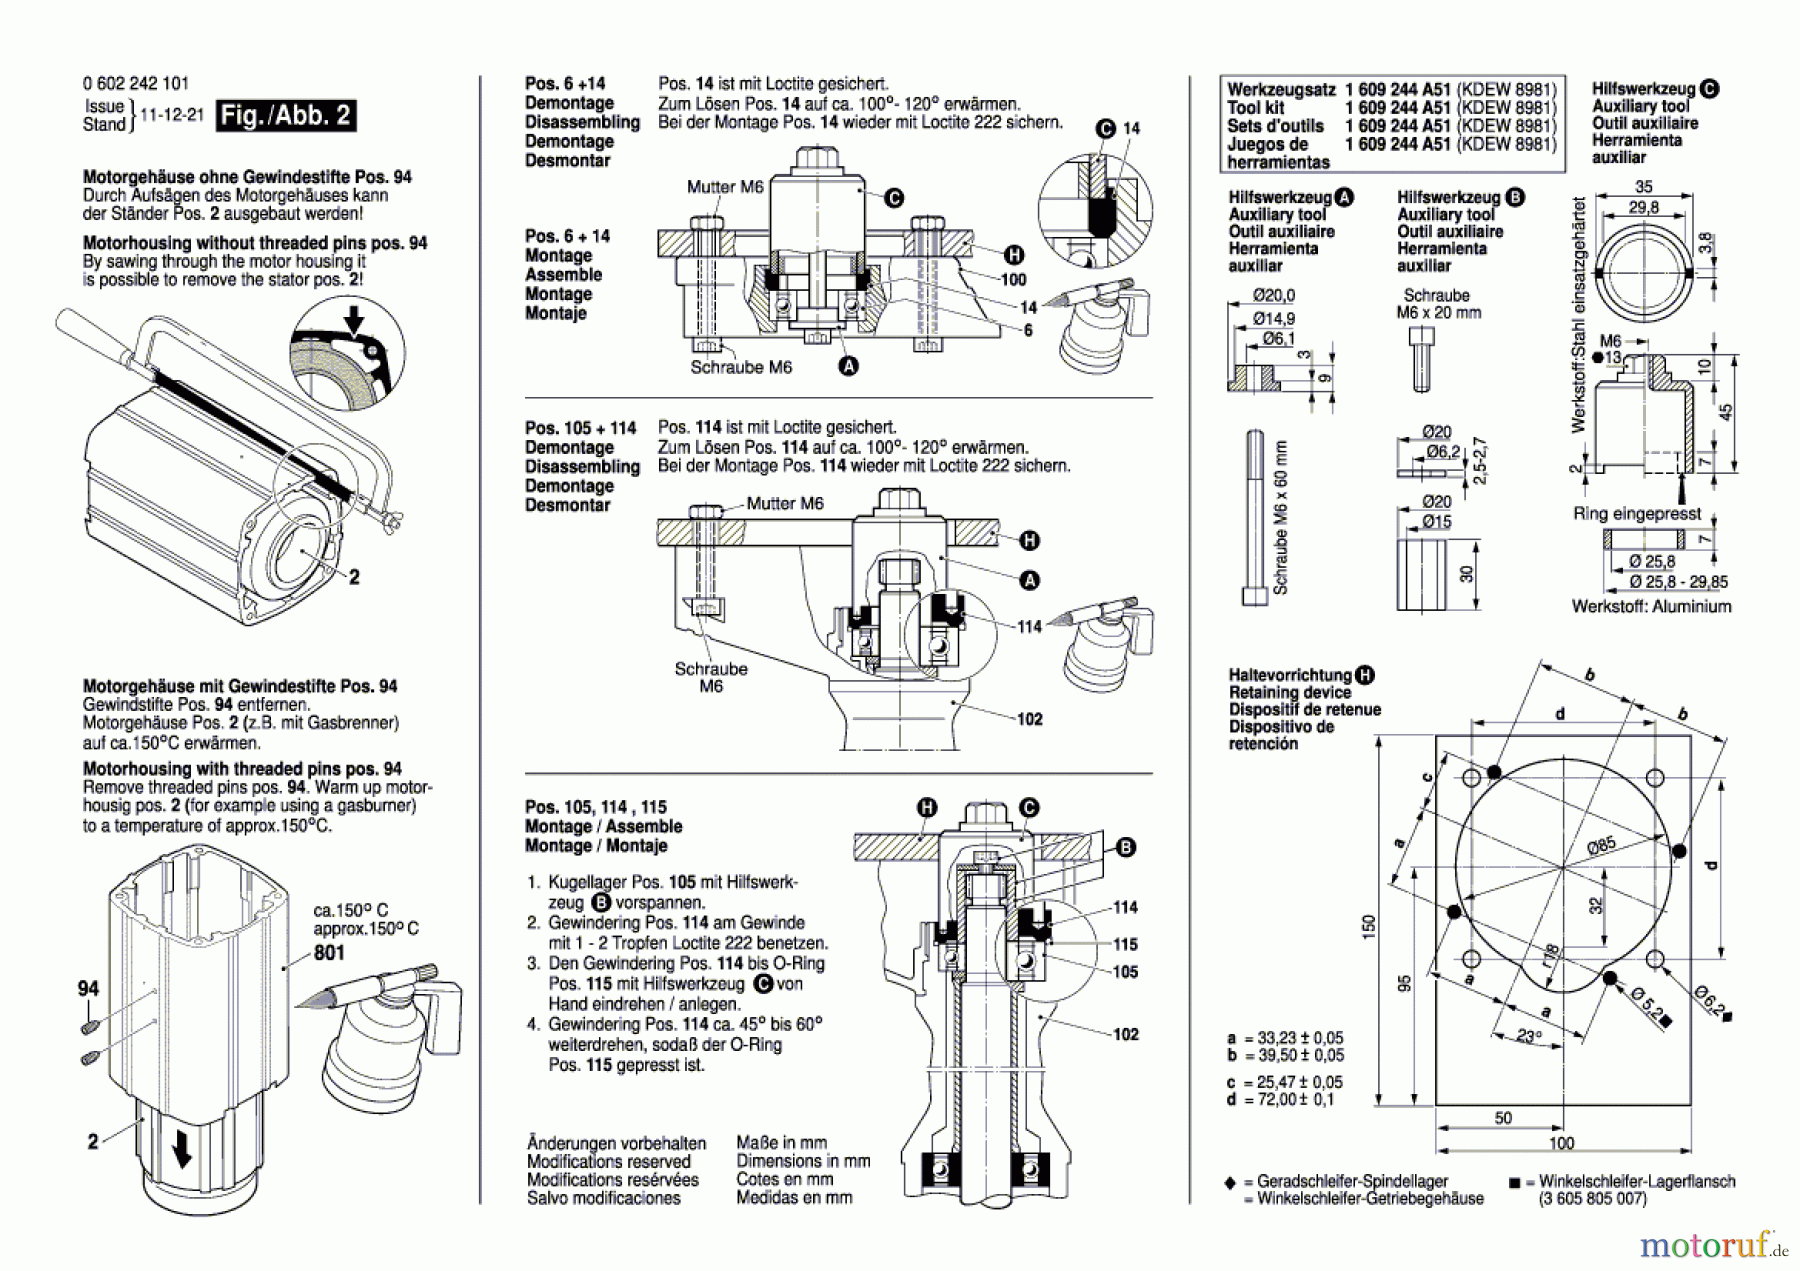  Bosch Werkzeug Hf-Geradschleifer GERADSCHLEIFER 2 242 Seite 2